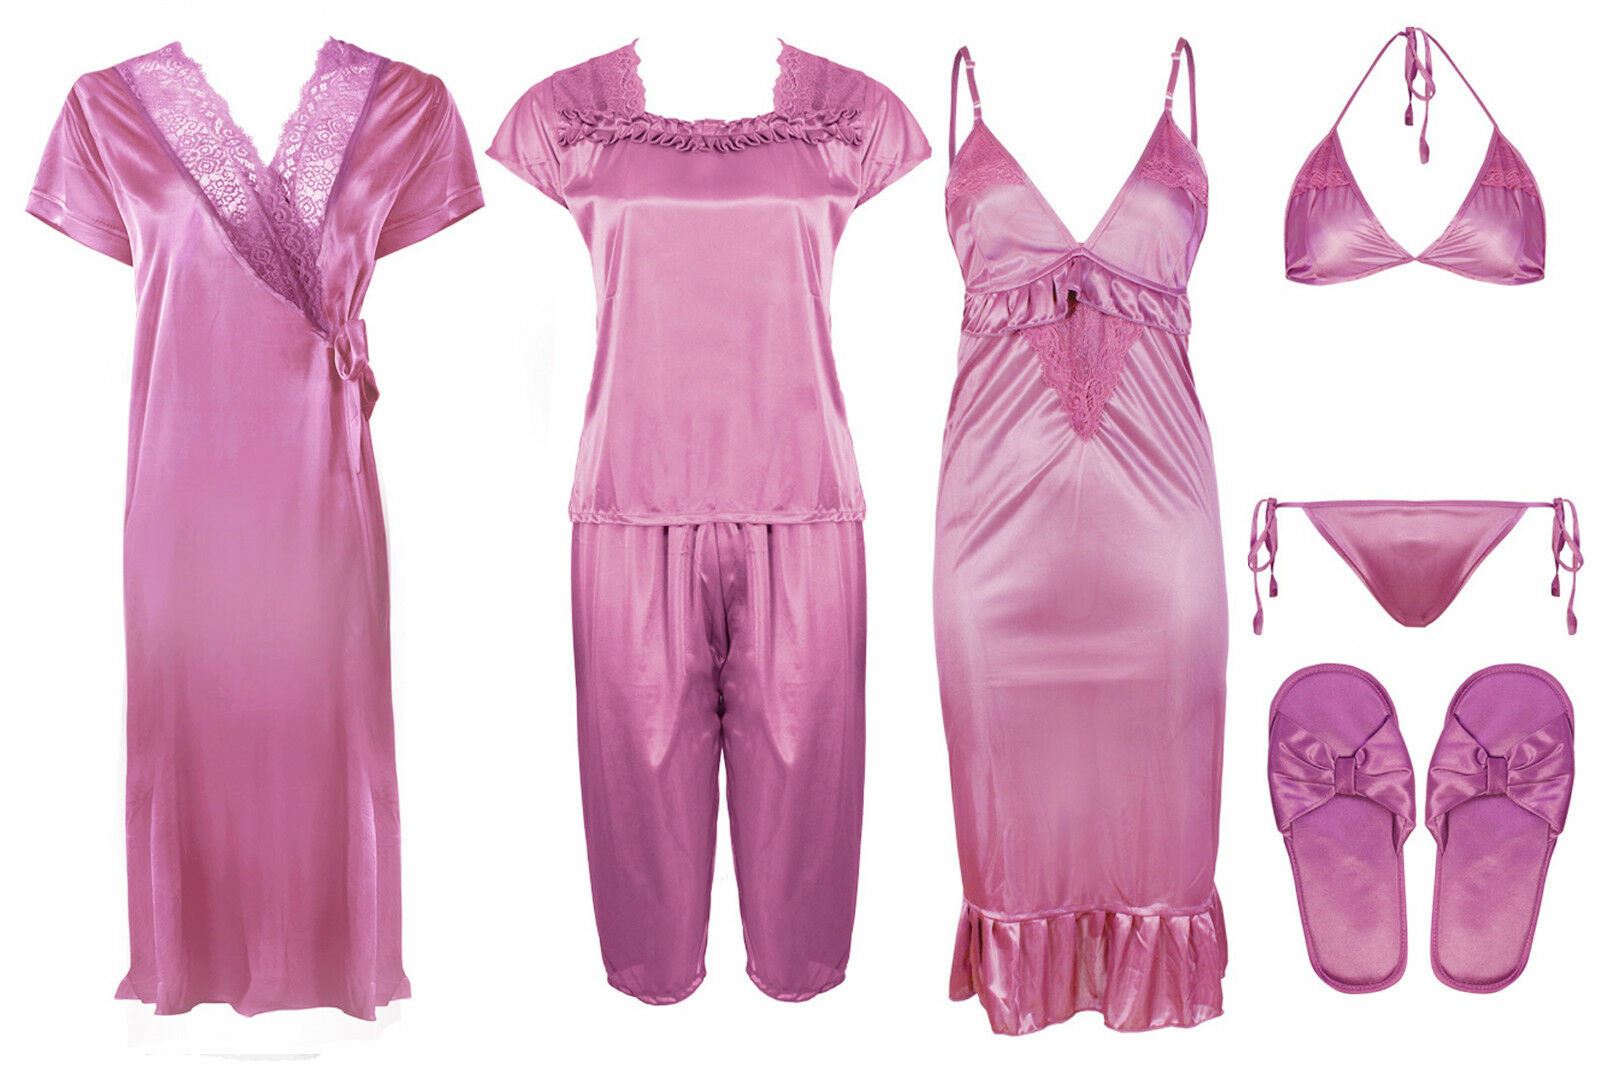 Rose Pink 1 / One Size Ladies Satin Nightwear Set / Pyjama Set The Orange Tags